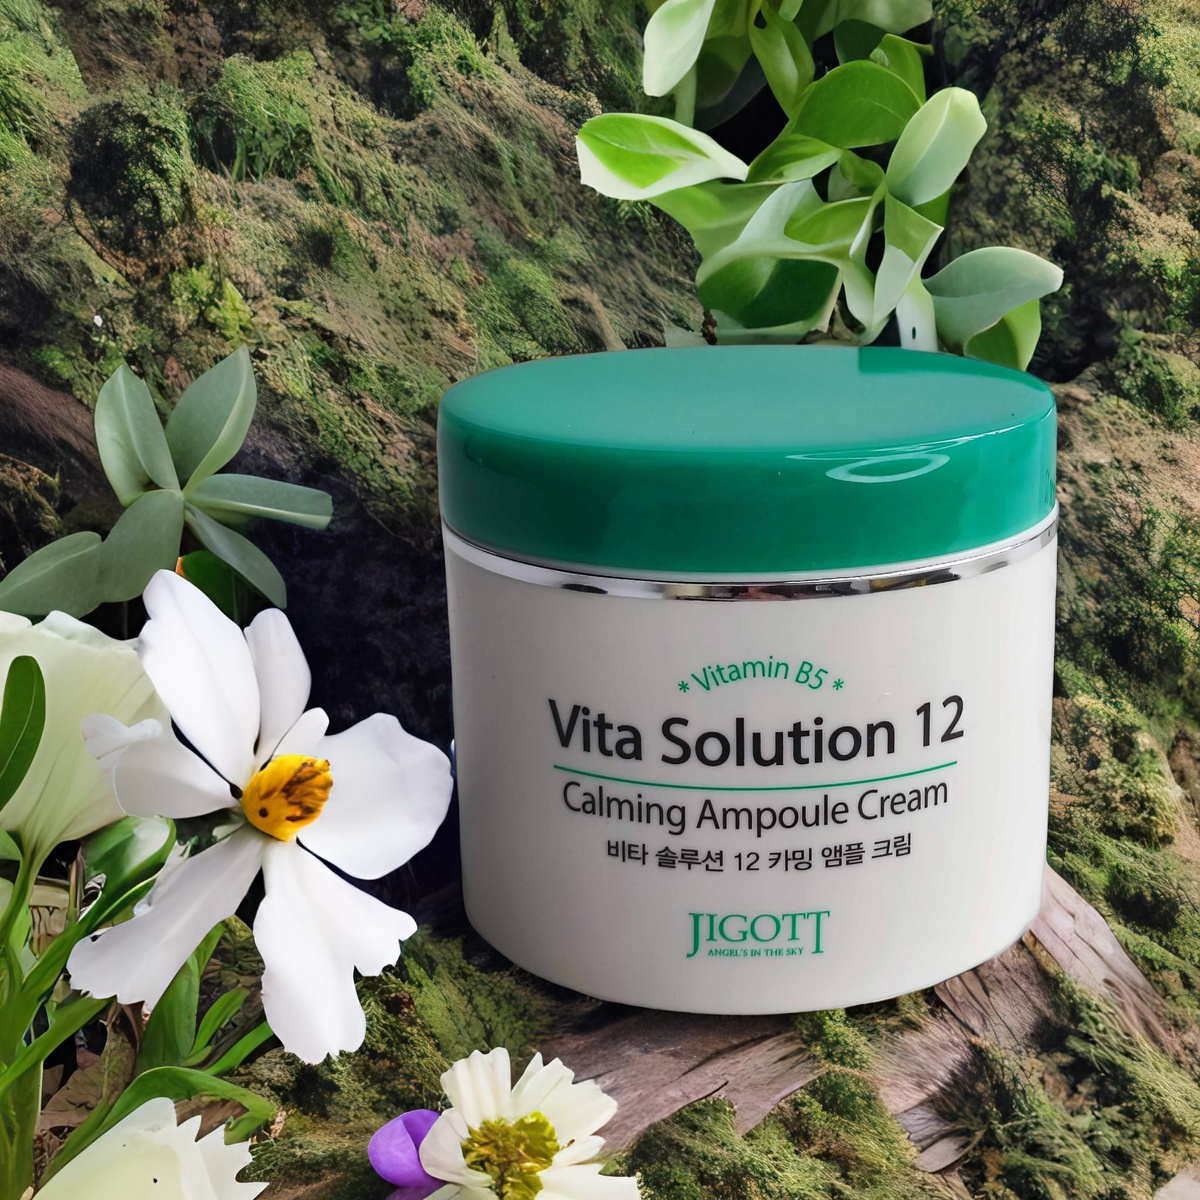 Крем успокаивающий JIGOTT Vita Solution 12 Calming ampoule cream с природными источниками витамина В5 успокаивает кожу, смягчает и восстанавливает эпидермис, а также способен разгладить первые морщинки.  Обладает противовоспалительным и успокаивающим действием, способствует заживлению и регенерации кожи.